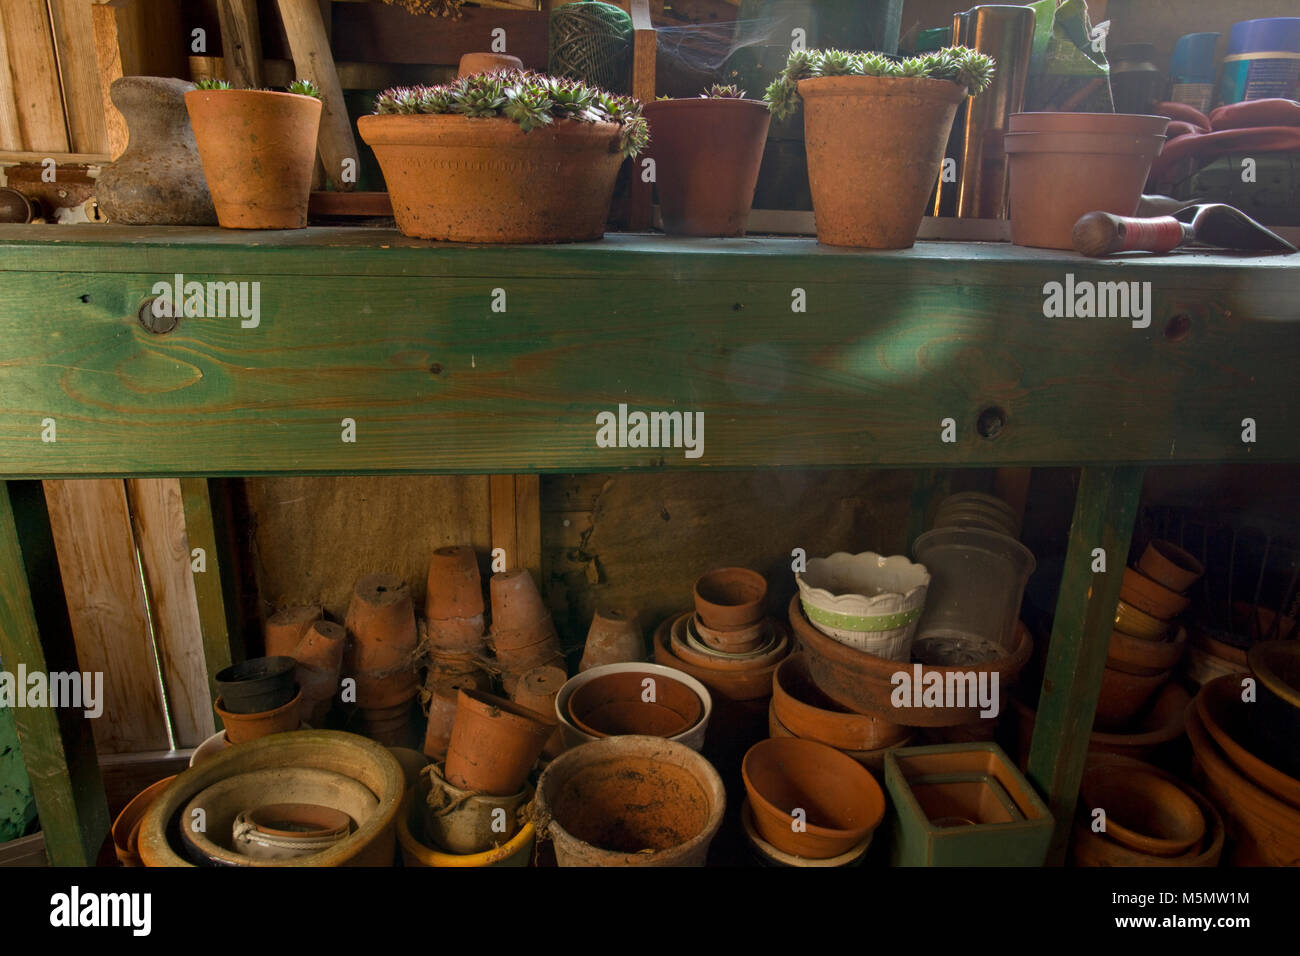 Interno della Tettoia da giardino con terracotta vasi per piante e piante Foto Stock